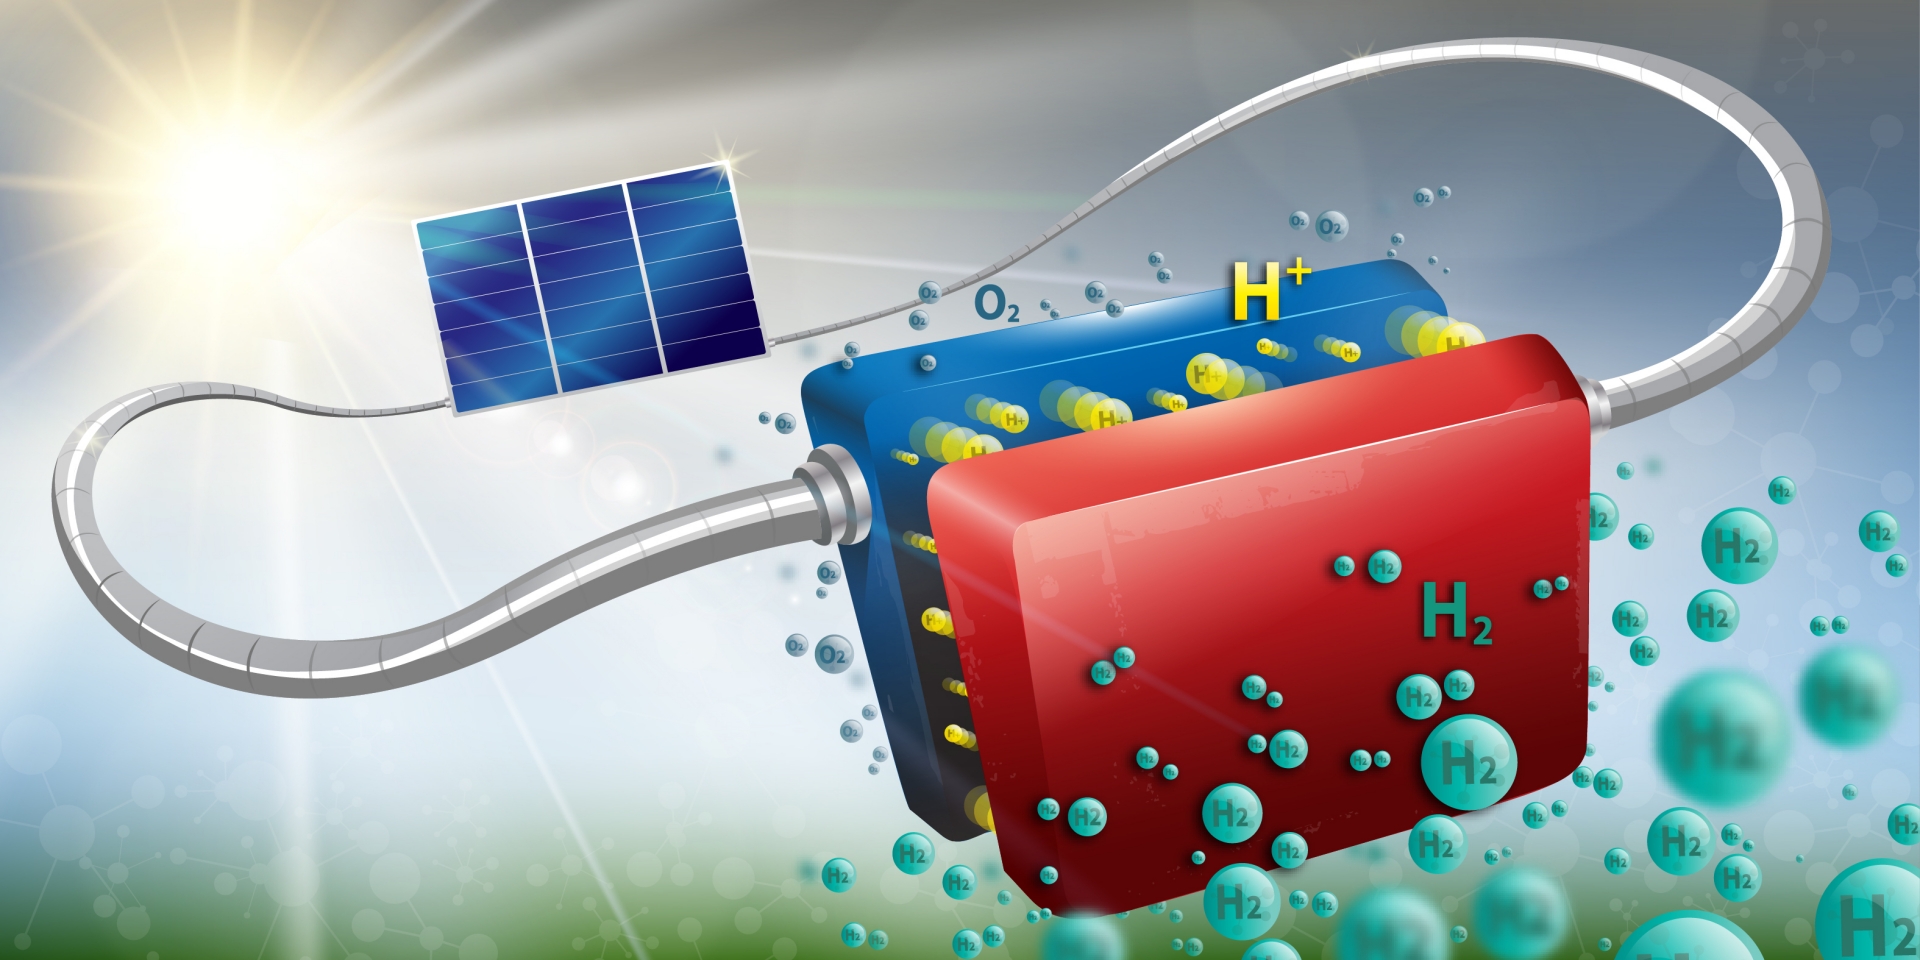 Amélioration de la production d'hydrogène grâce au solaire.